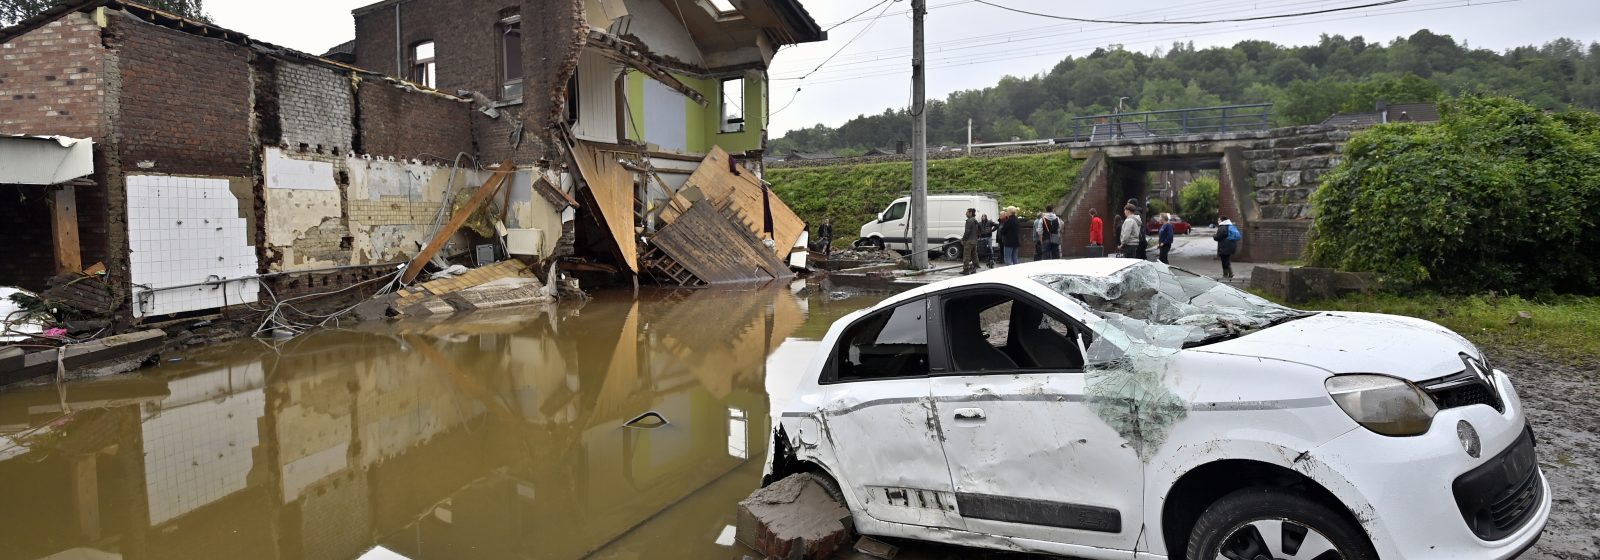 Zware schade door overstromingen in regio Luik